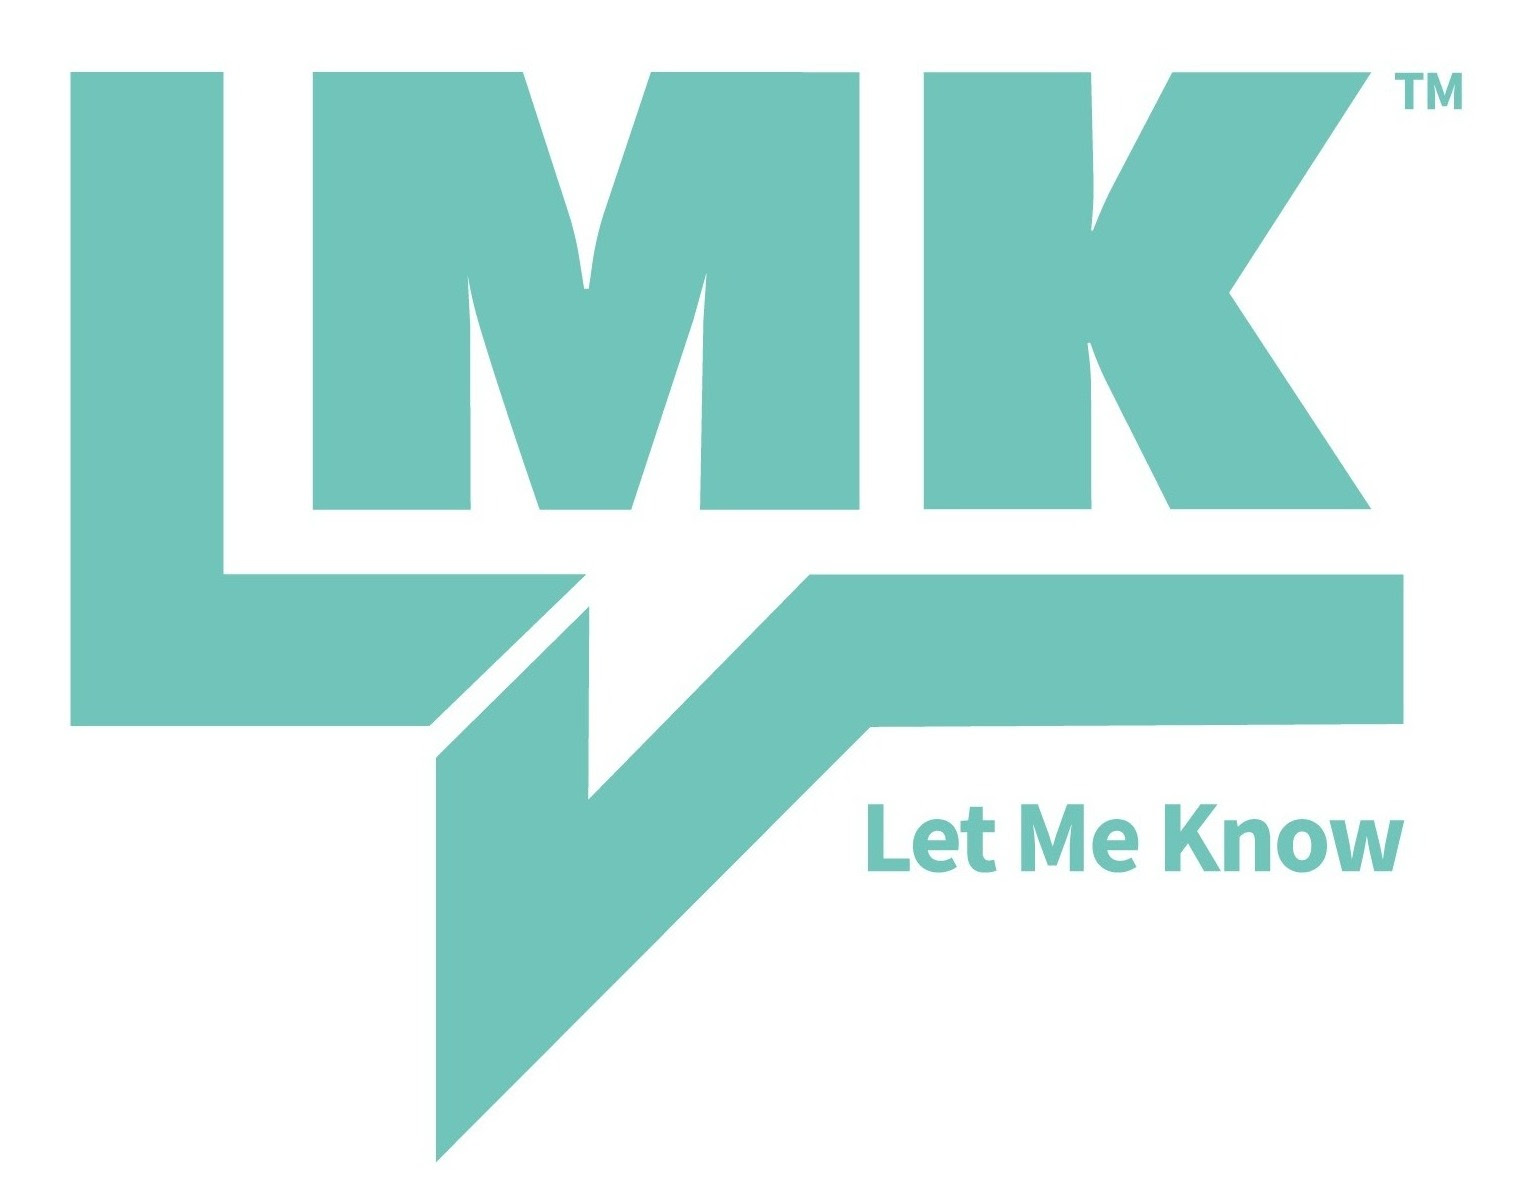 Let Me Know (LMK)